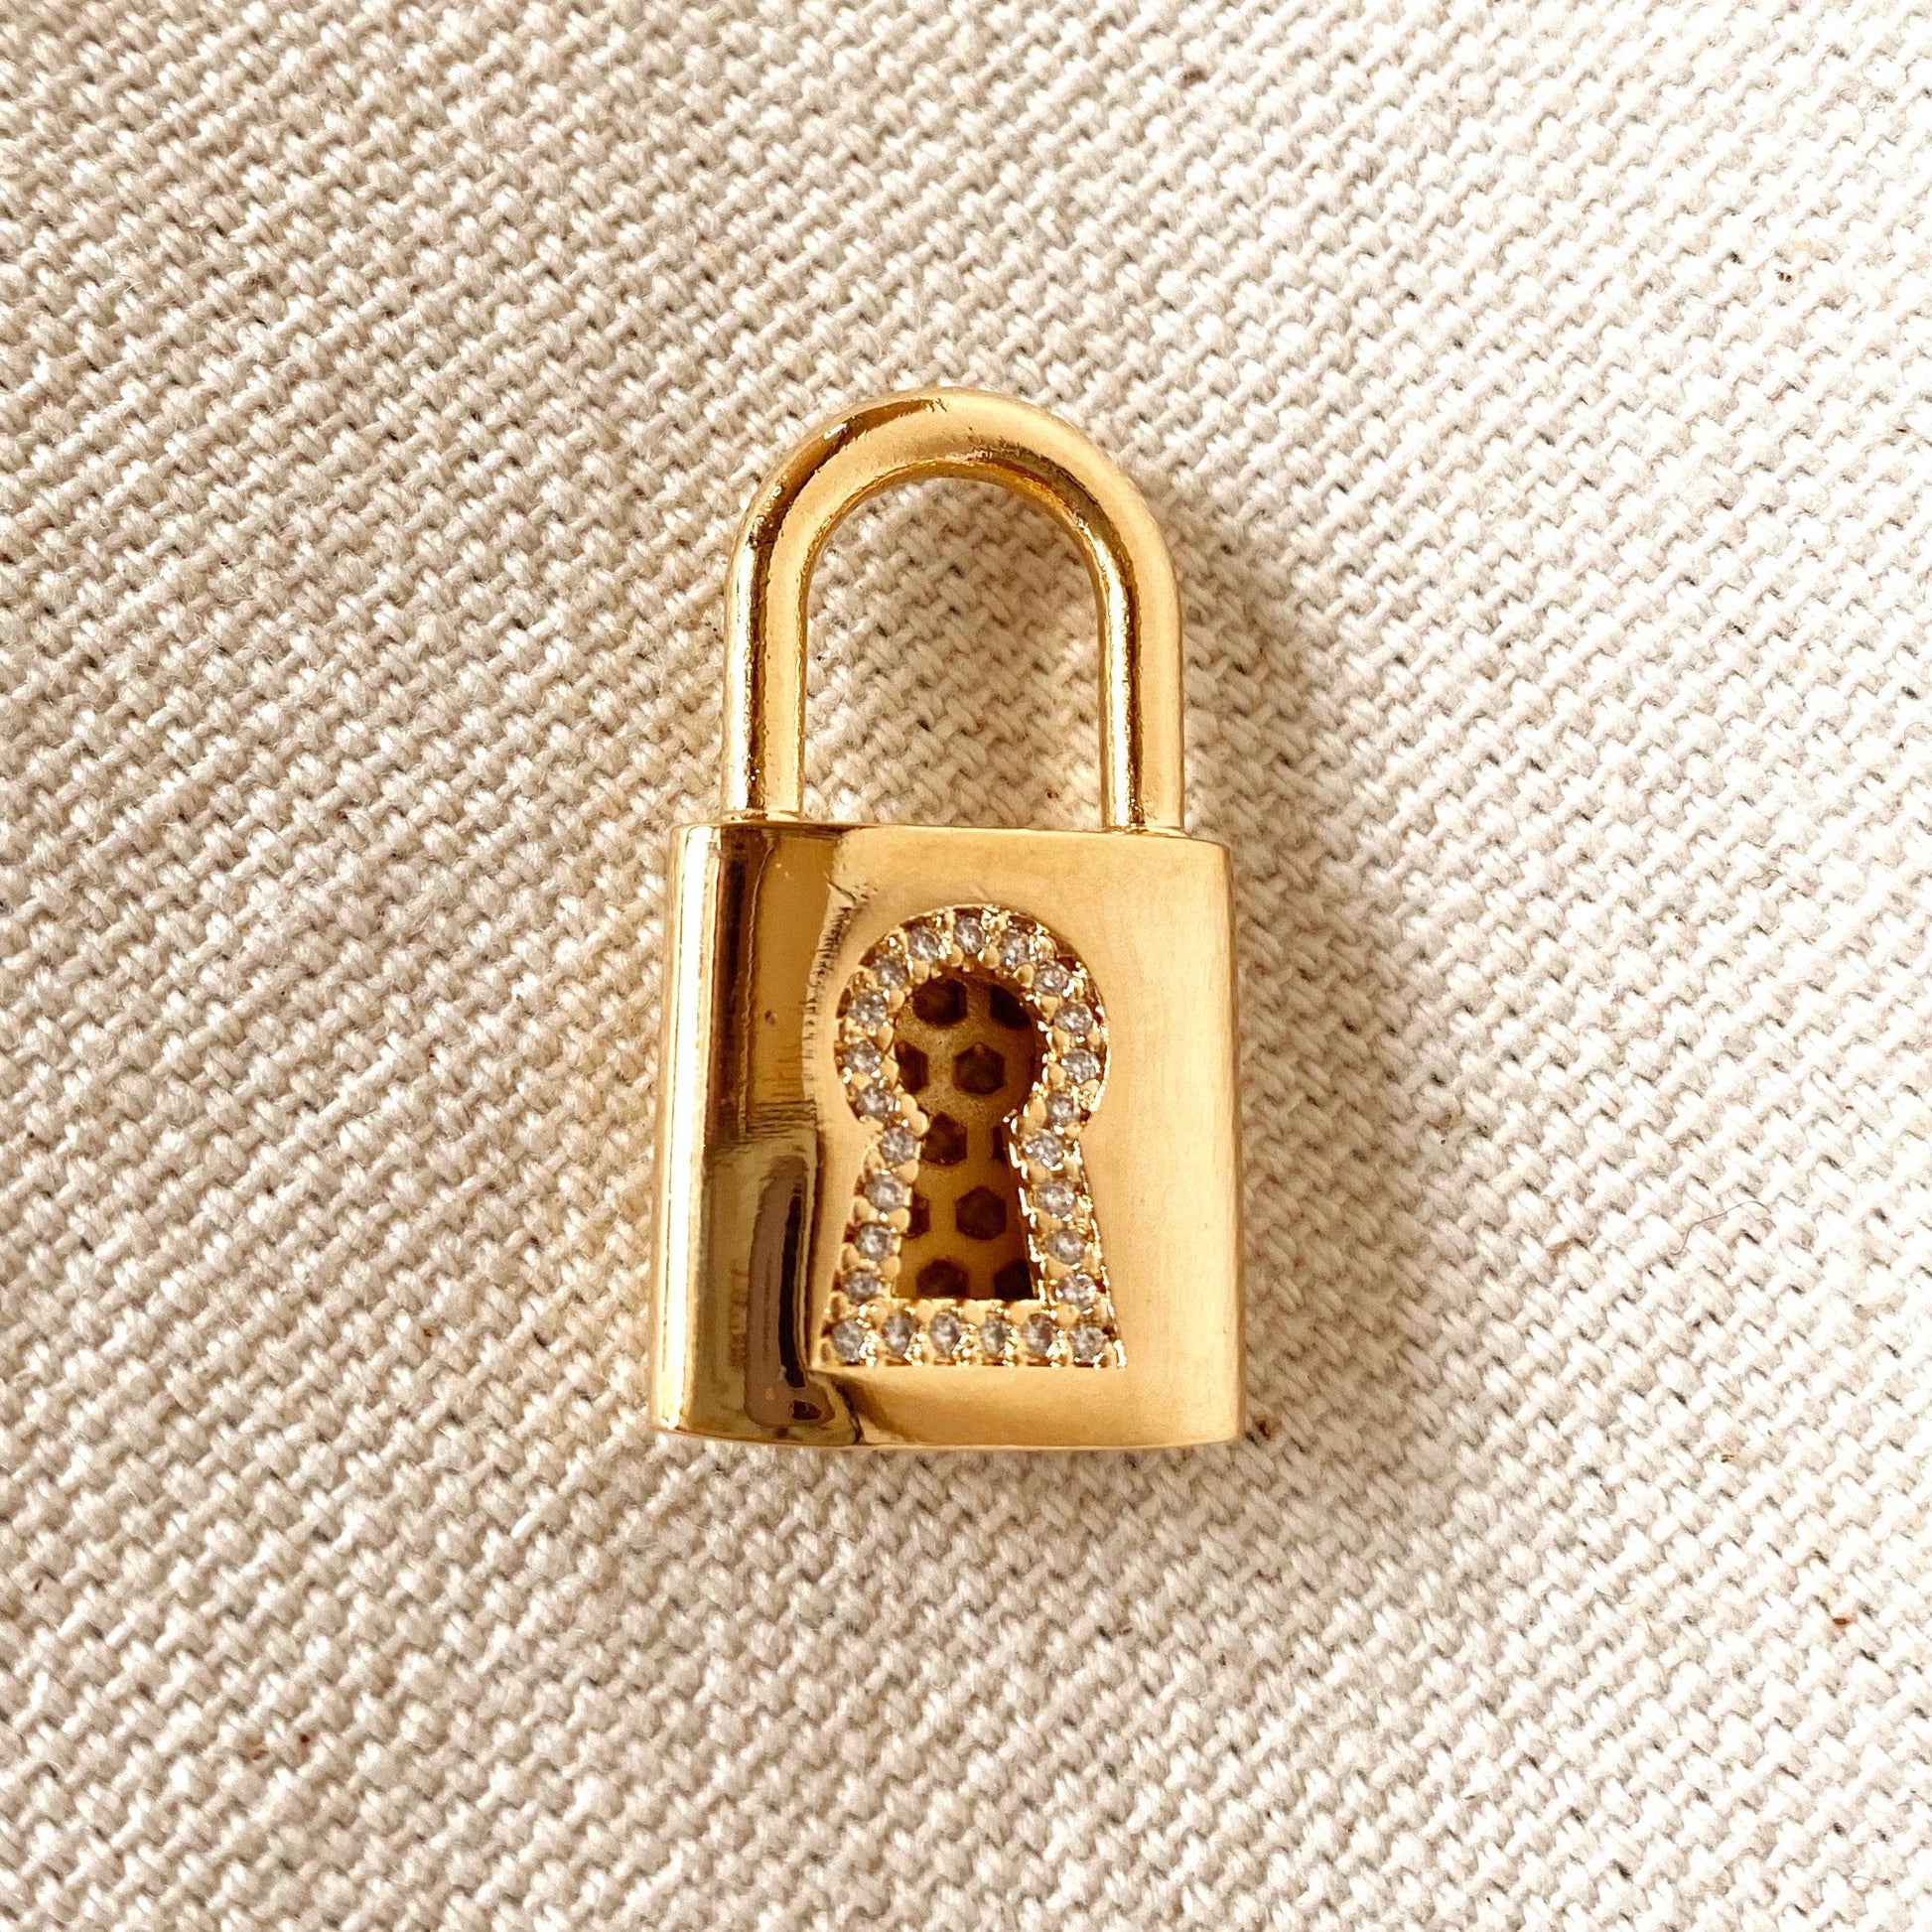 GoldFi 18k Gold Filled Fine Polished Love Lock Pendant